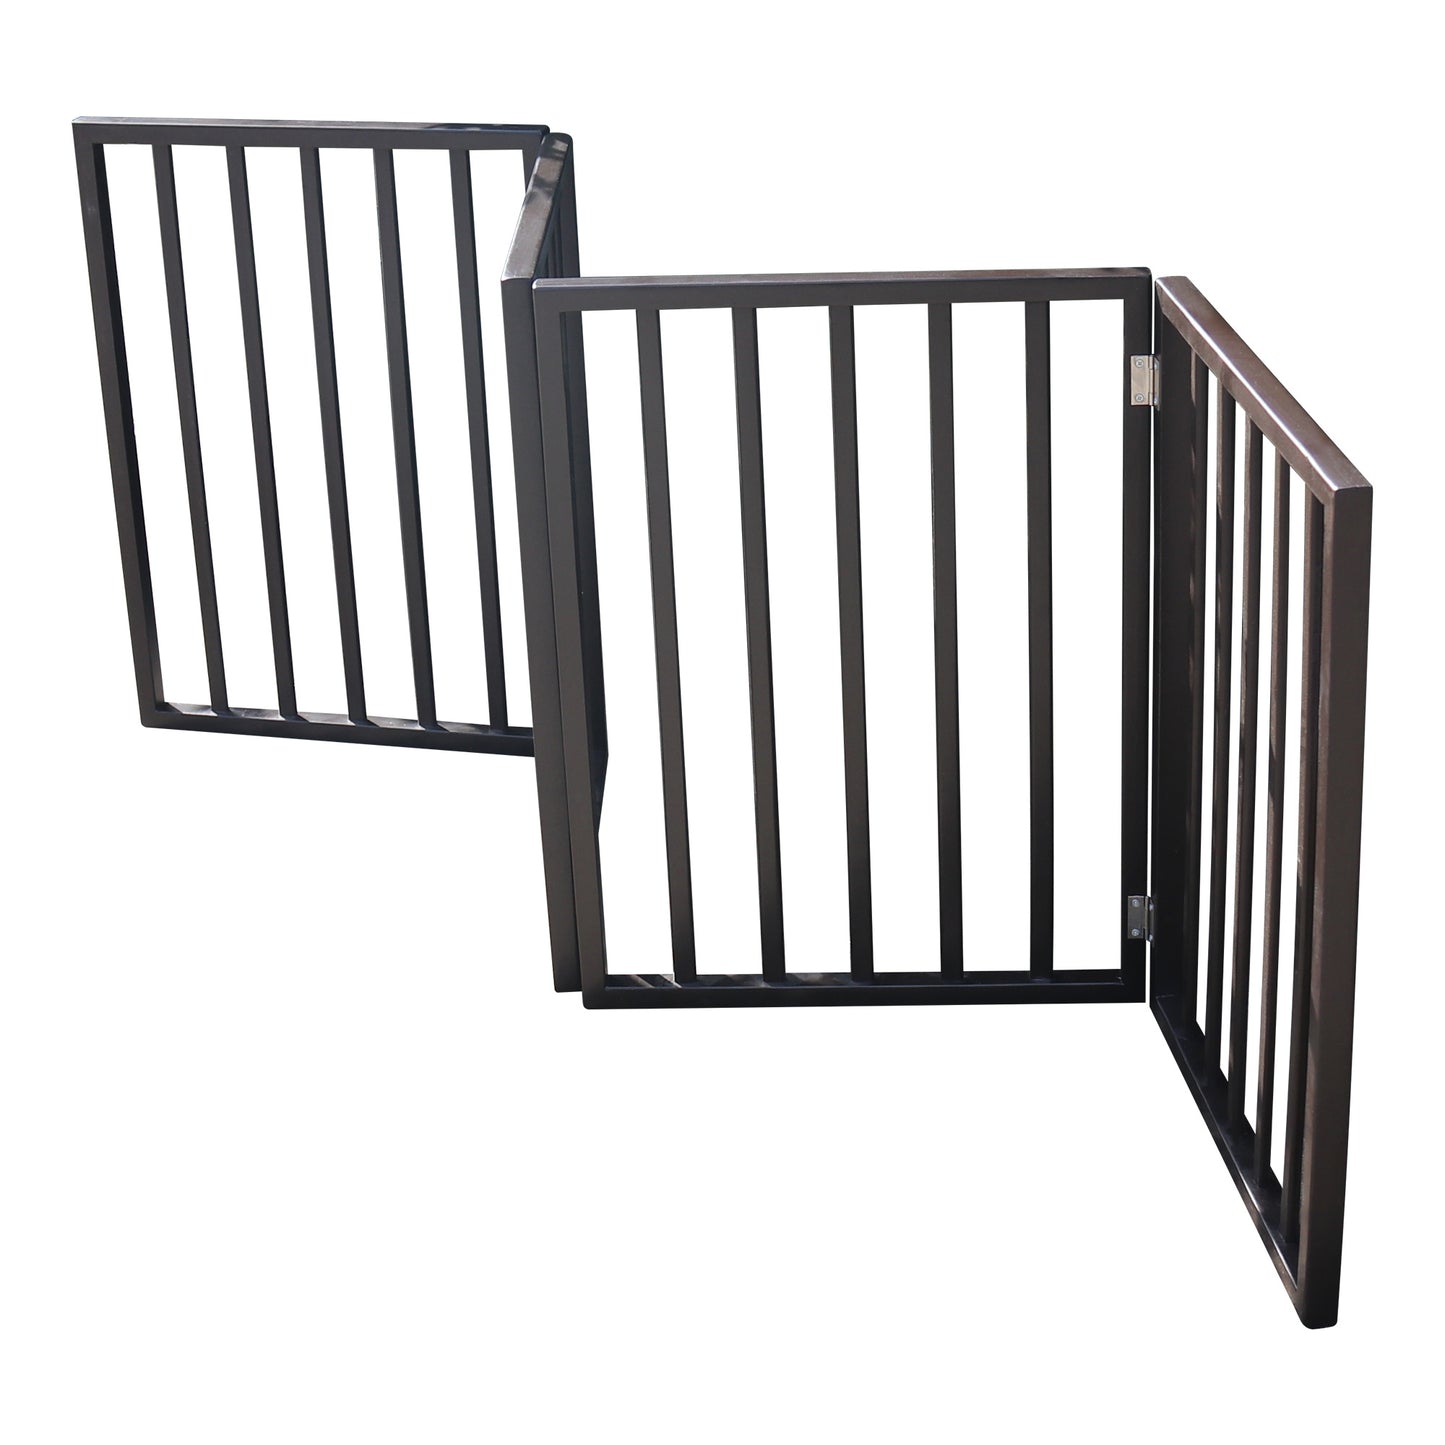 Freestanding Adjustable Dark Brown Wood Gate